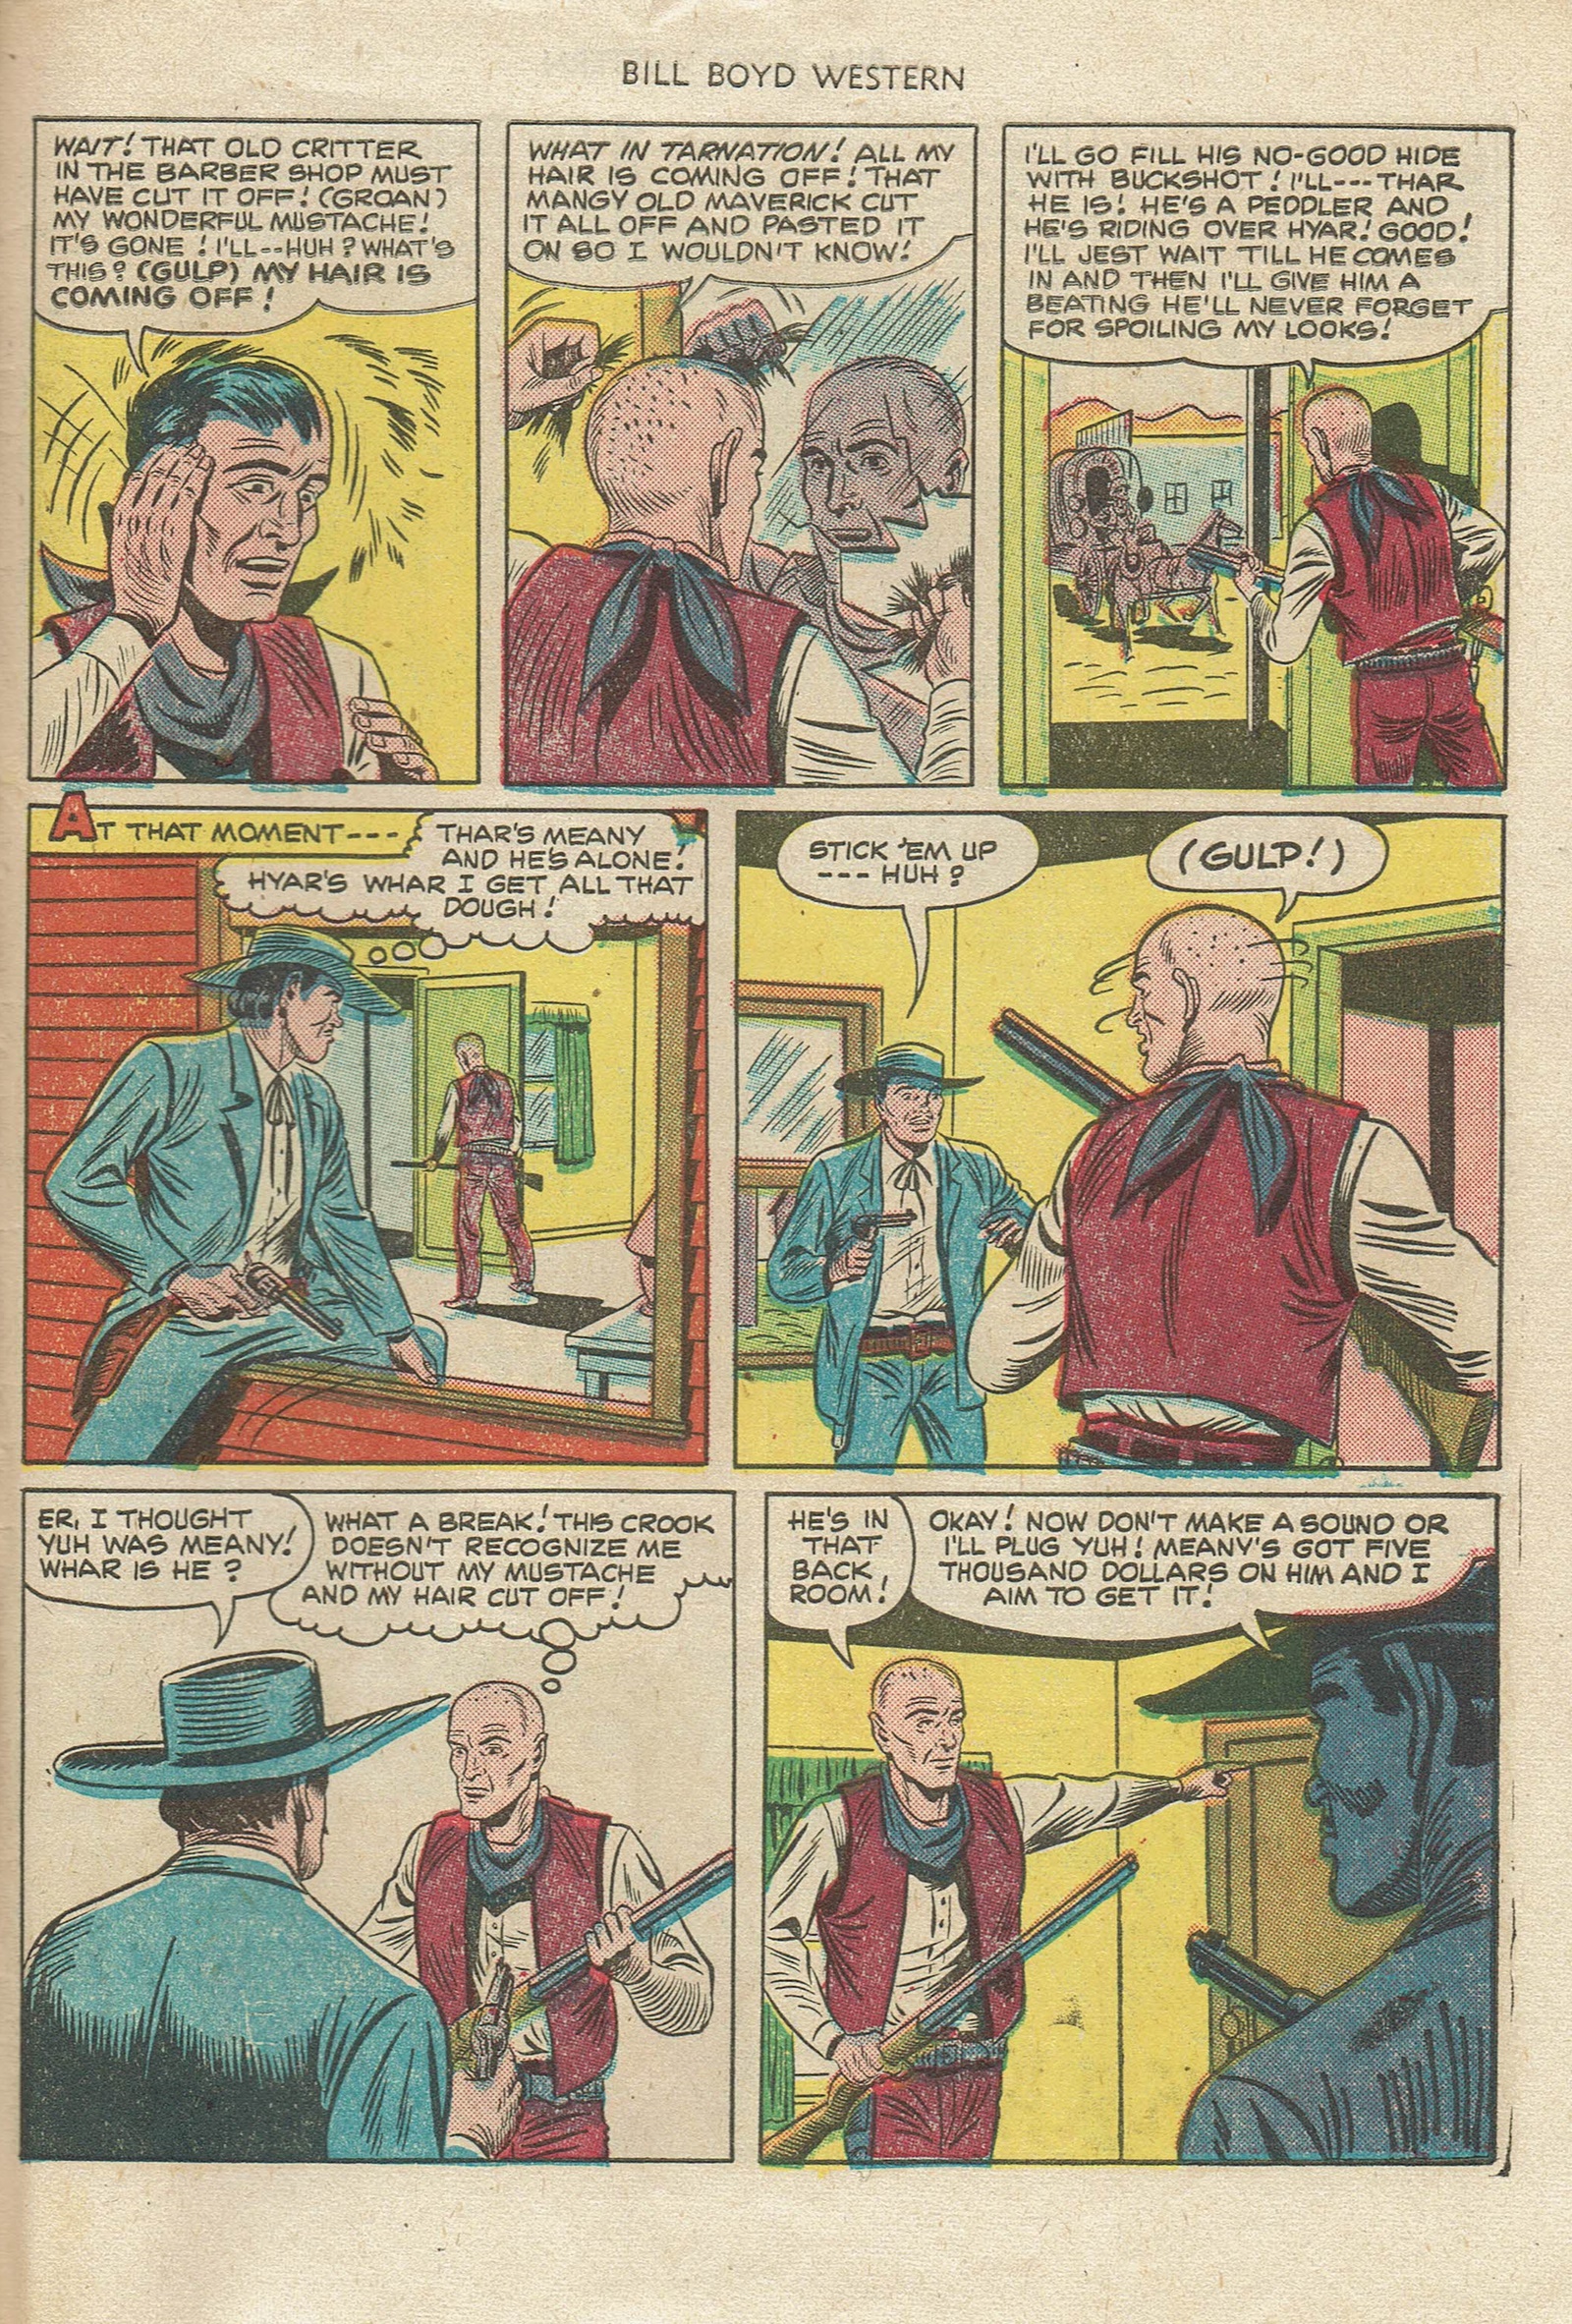 Read online Bill Boyd Western comic -  Issue #15 - 31